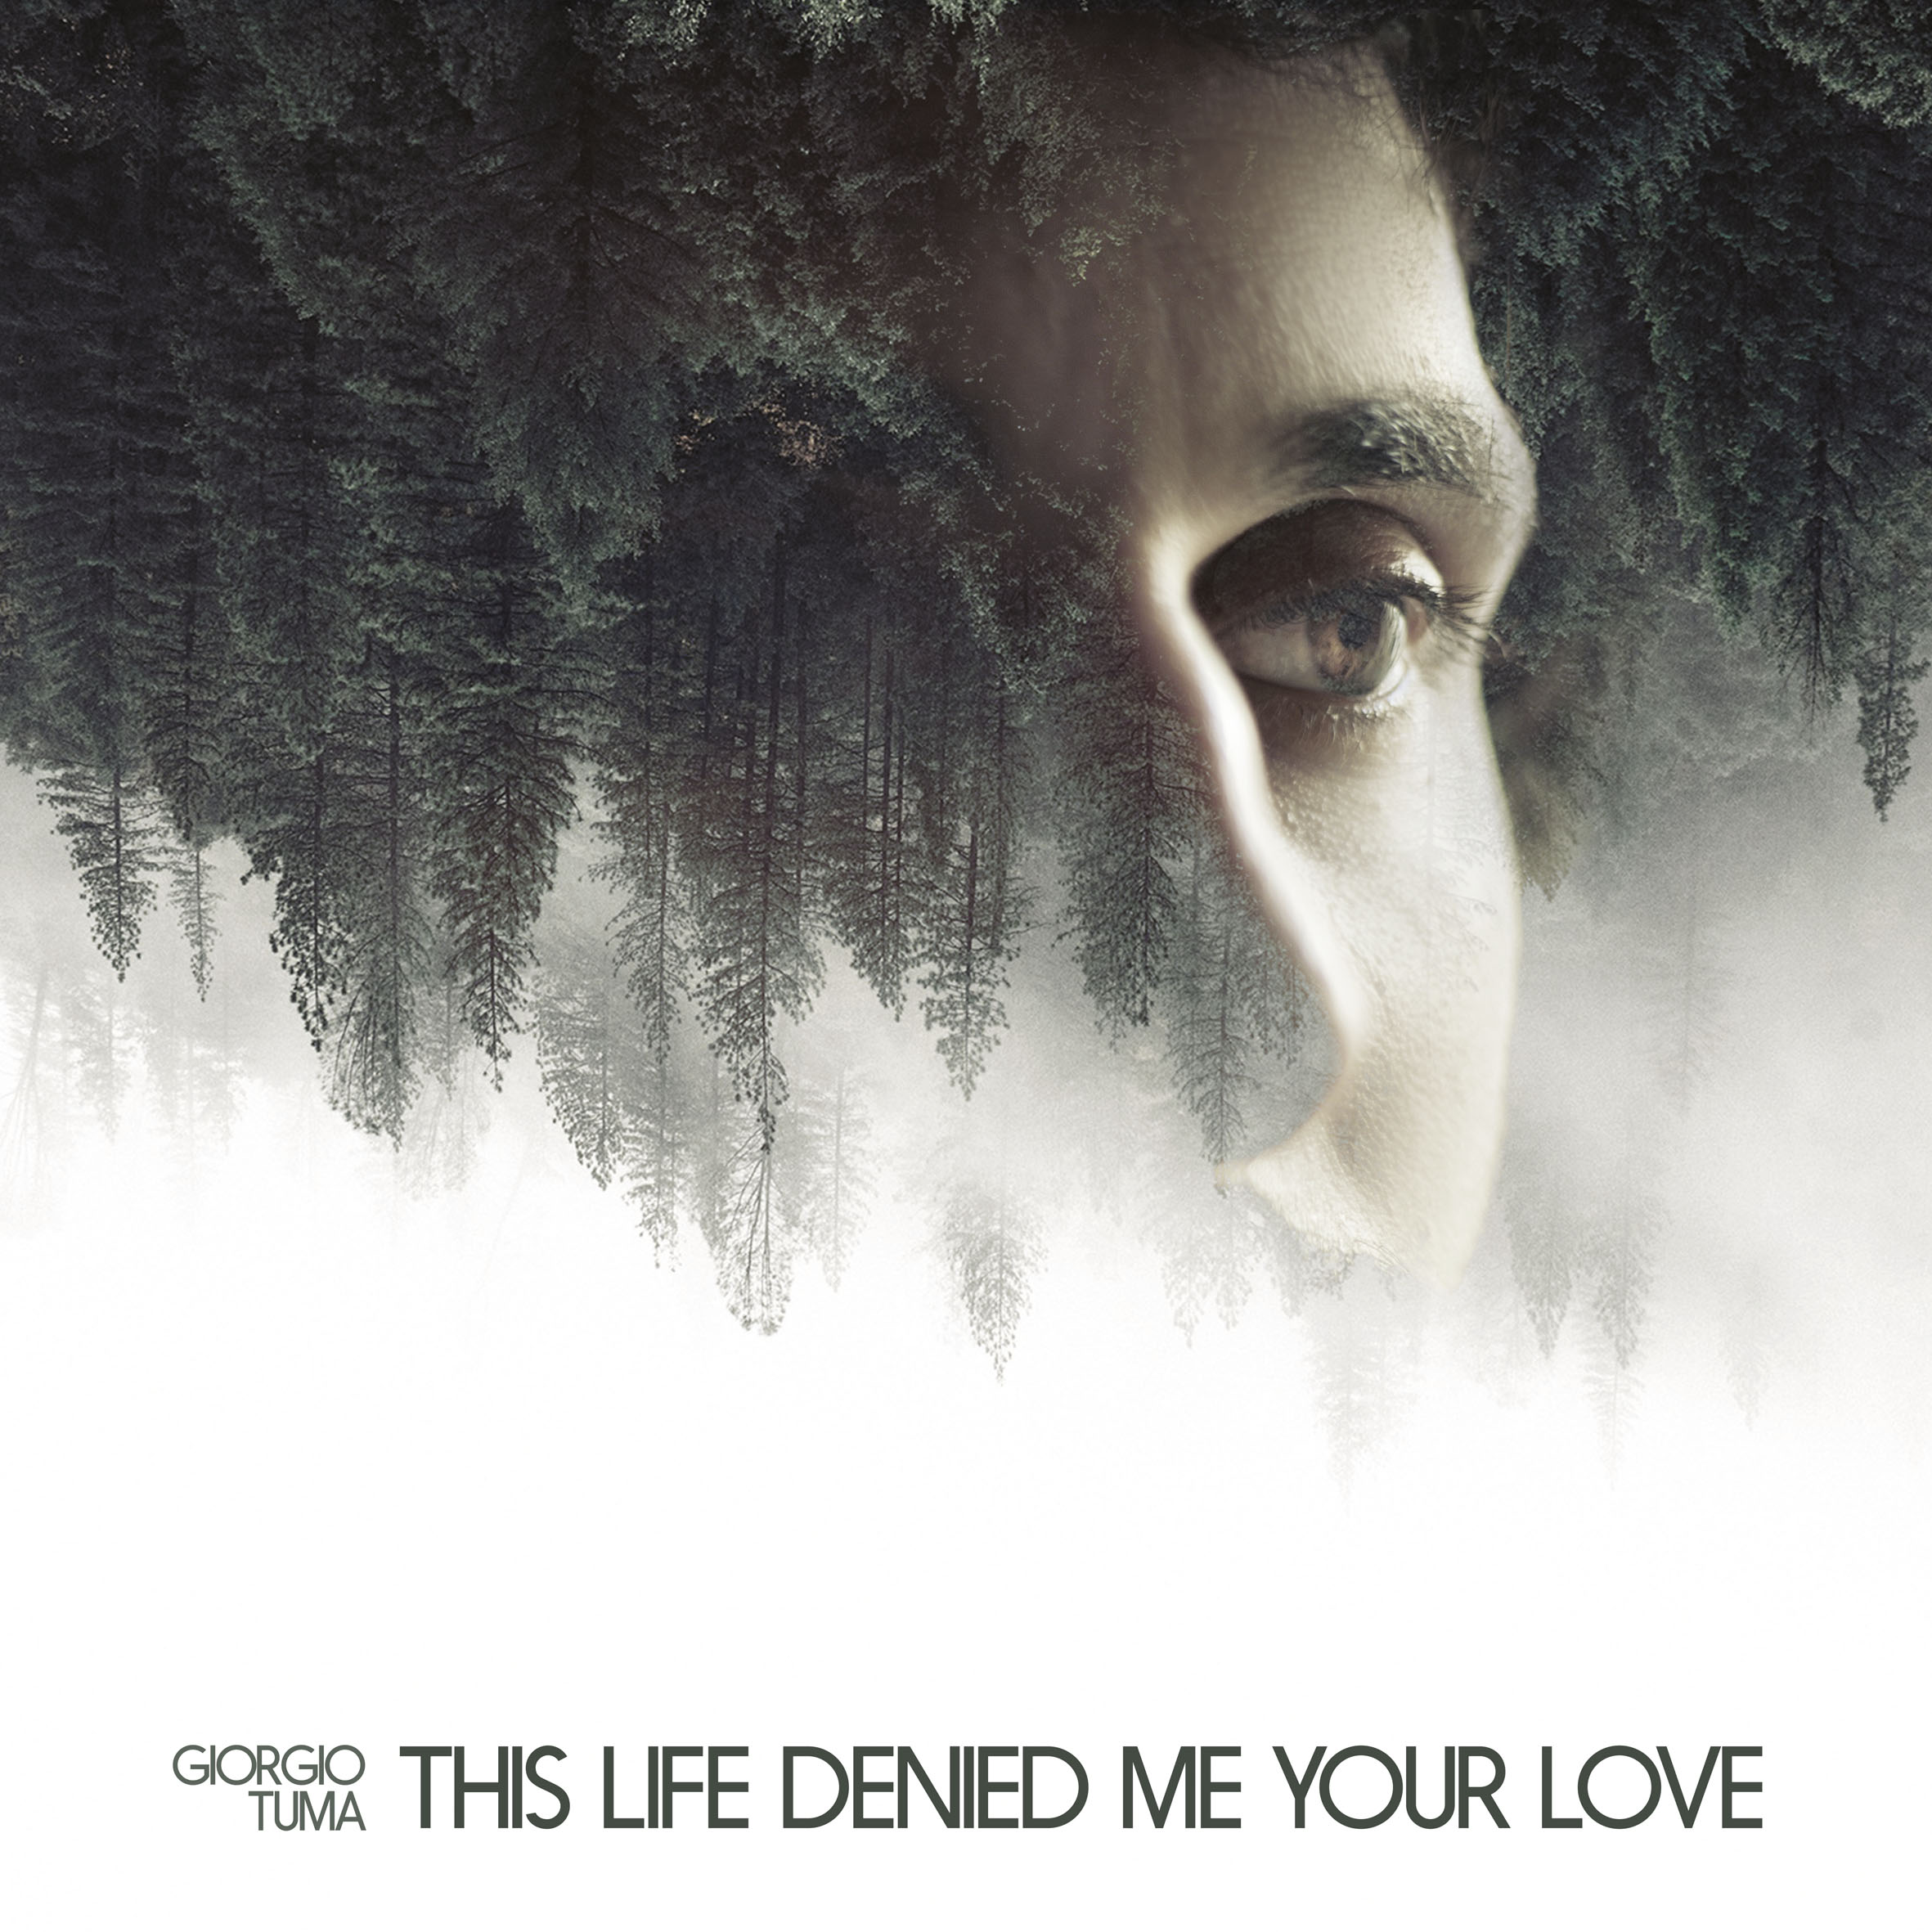 Giorgio Tuma "This Life Denied Me Your Love" [LP 12" / CD-Digipak] Portada 